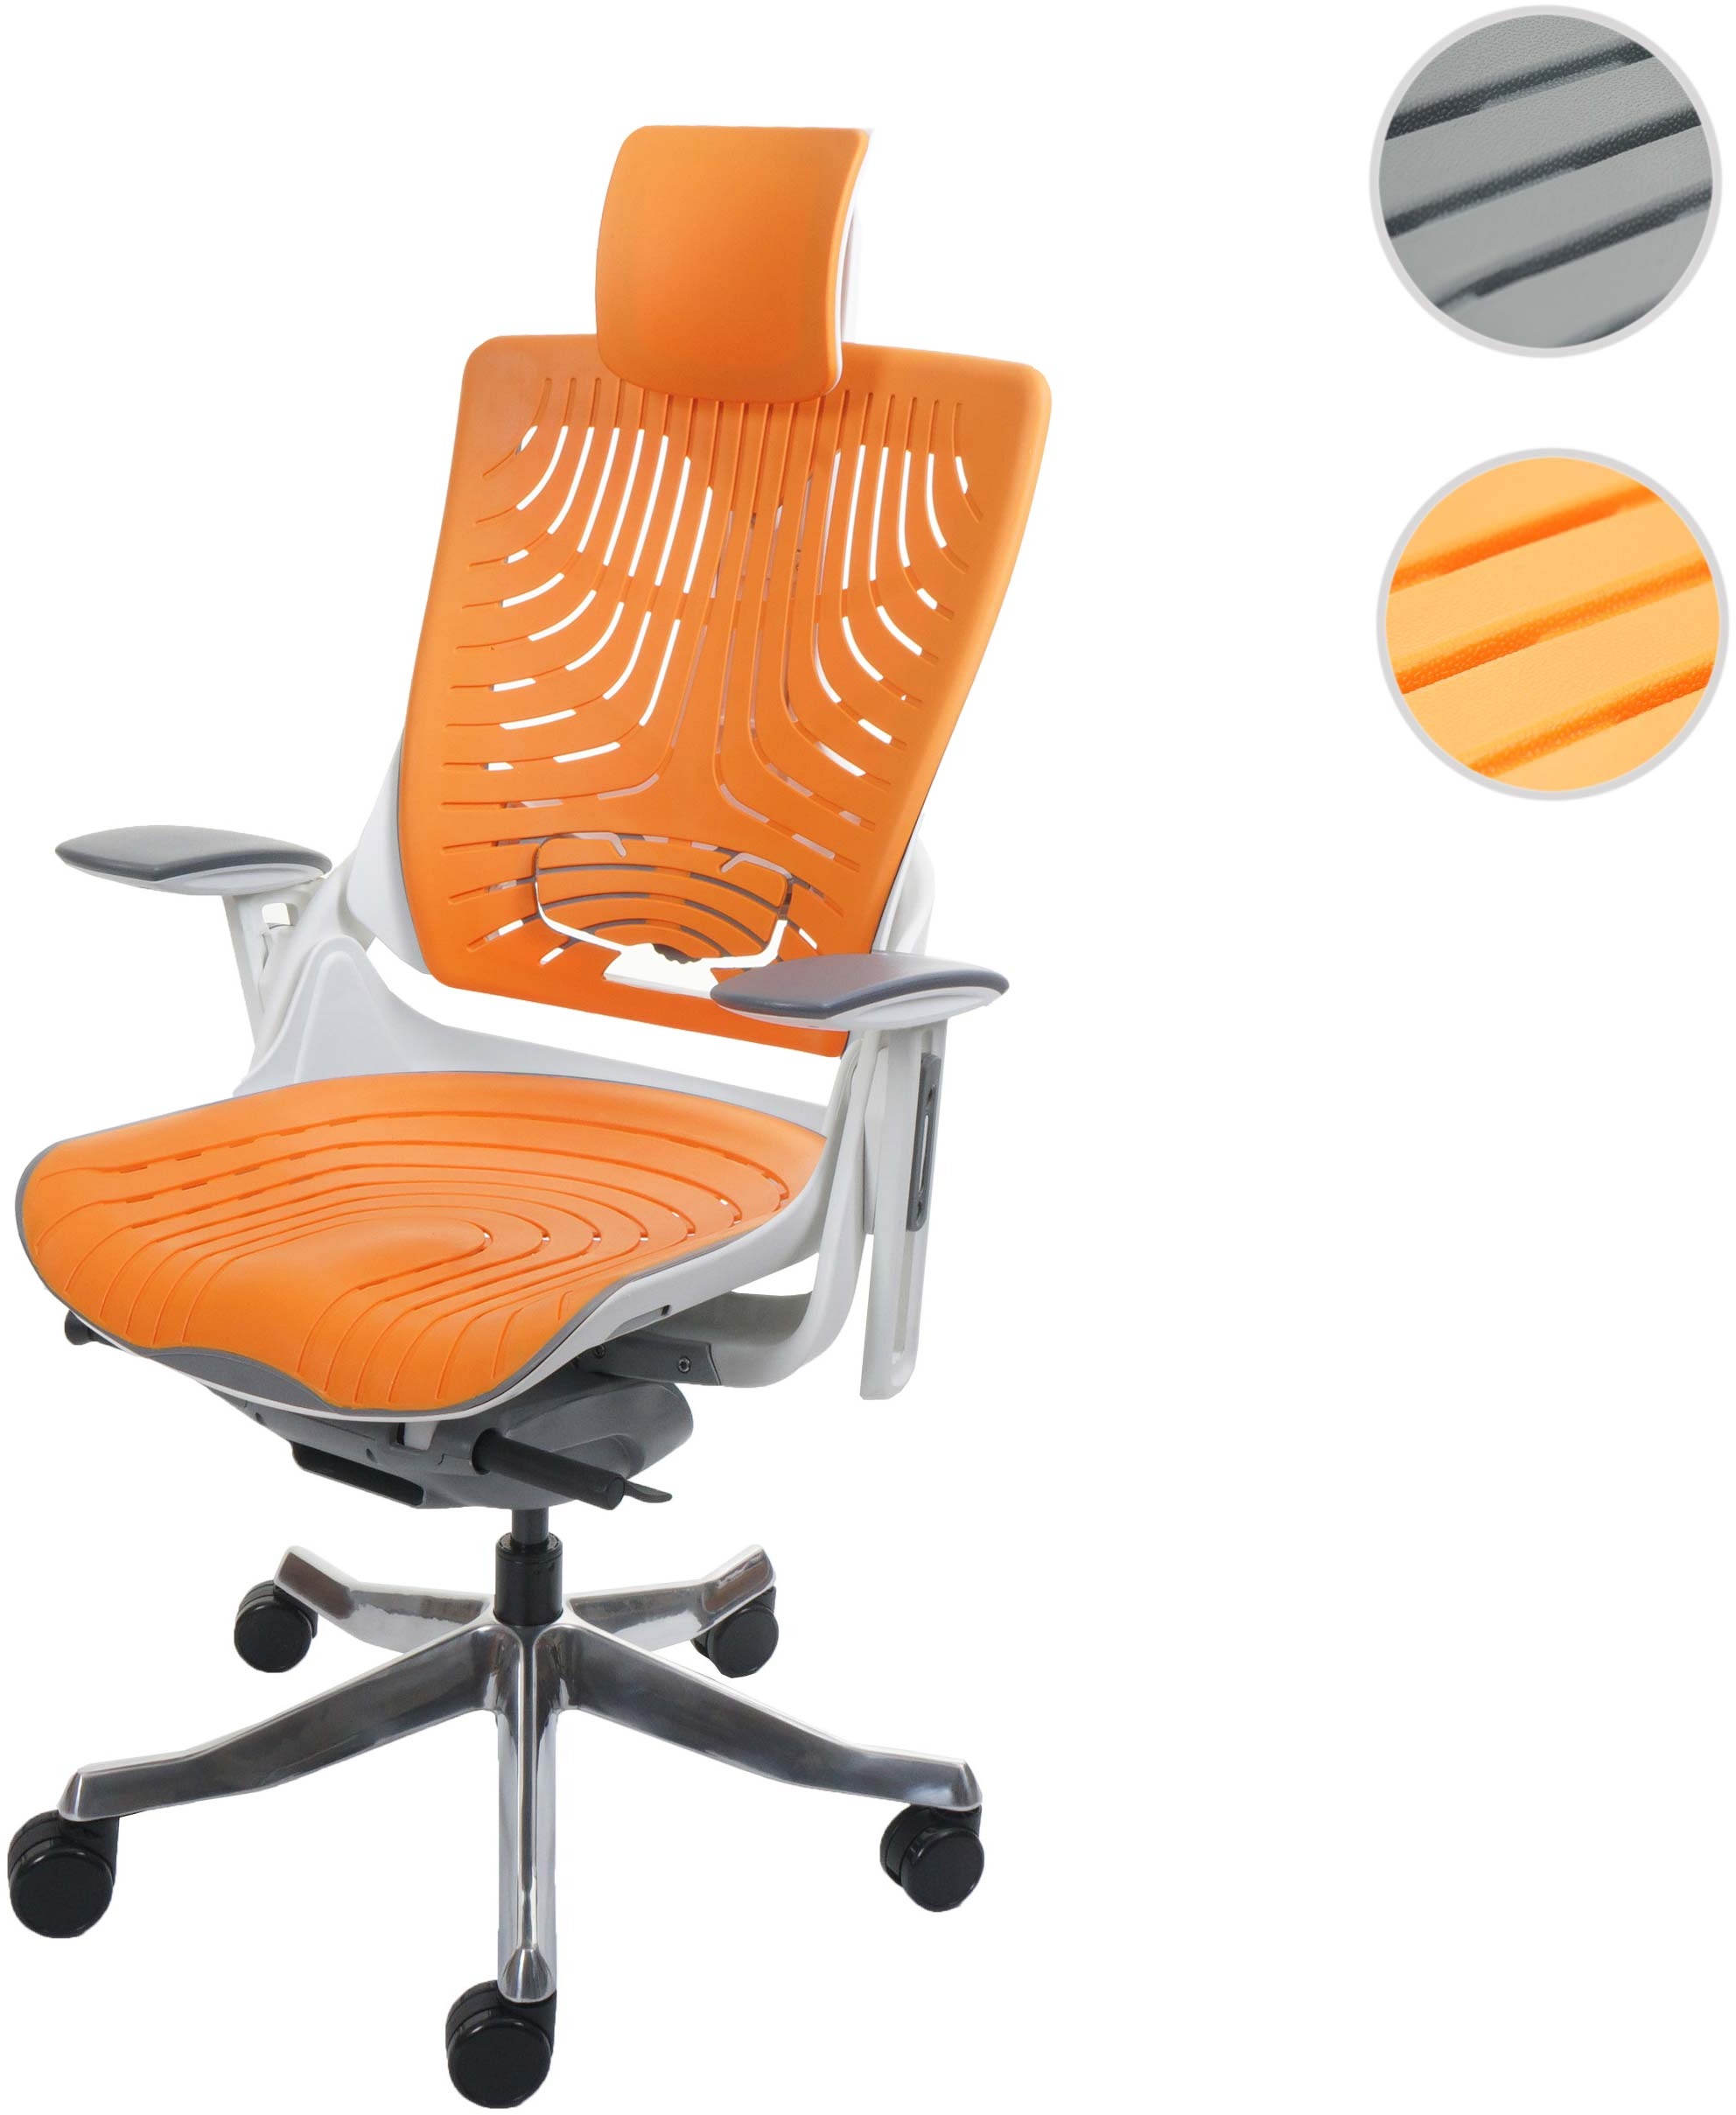 B√orostuhl MERRYFAIR Wau 2b, Schreibtischstuhl Drehstuhl, Hartschale, ergonomisch ~ orange